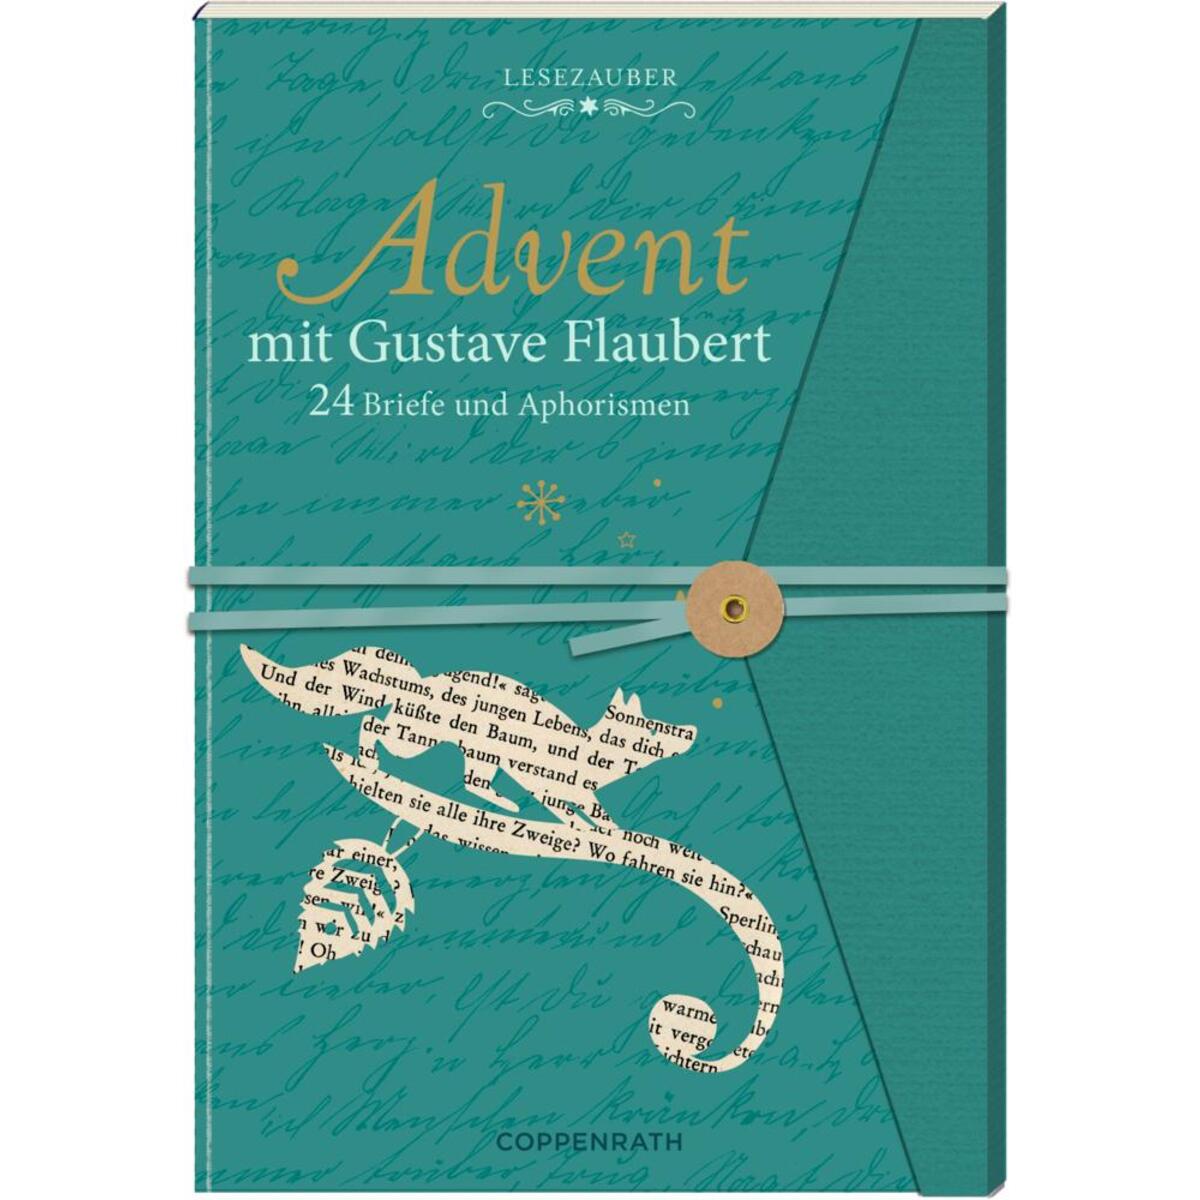 Briefbuch - Advent mit Gustave Flaubert von Coppenrath F